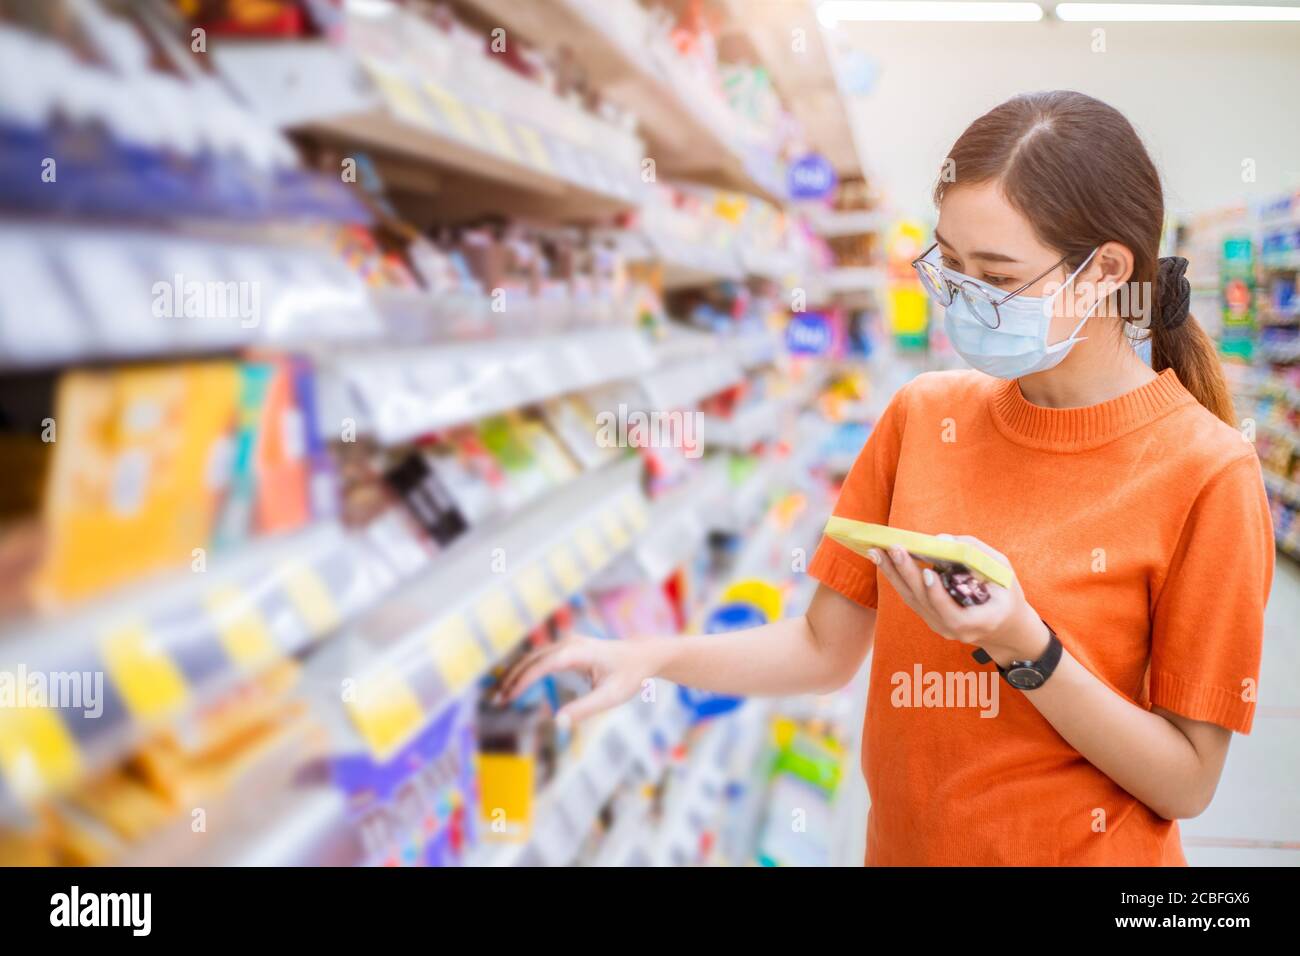 Asiatische Frau trägt Gesichtsmaske für gesundes Gehen bei Shopping Mart Wahl Produkte im Supermarkt Regal. Stockfoto